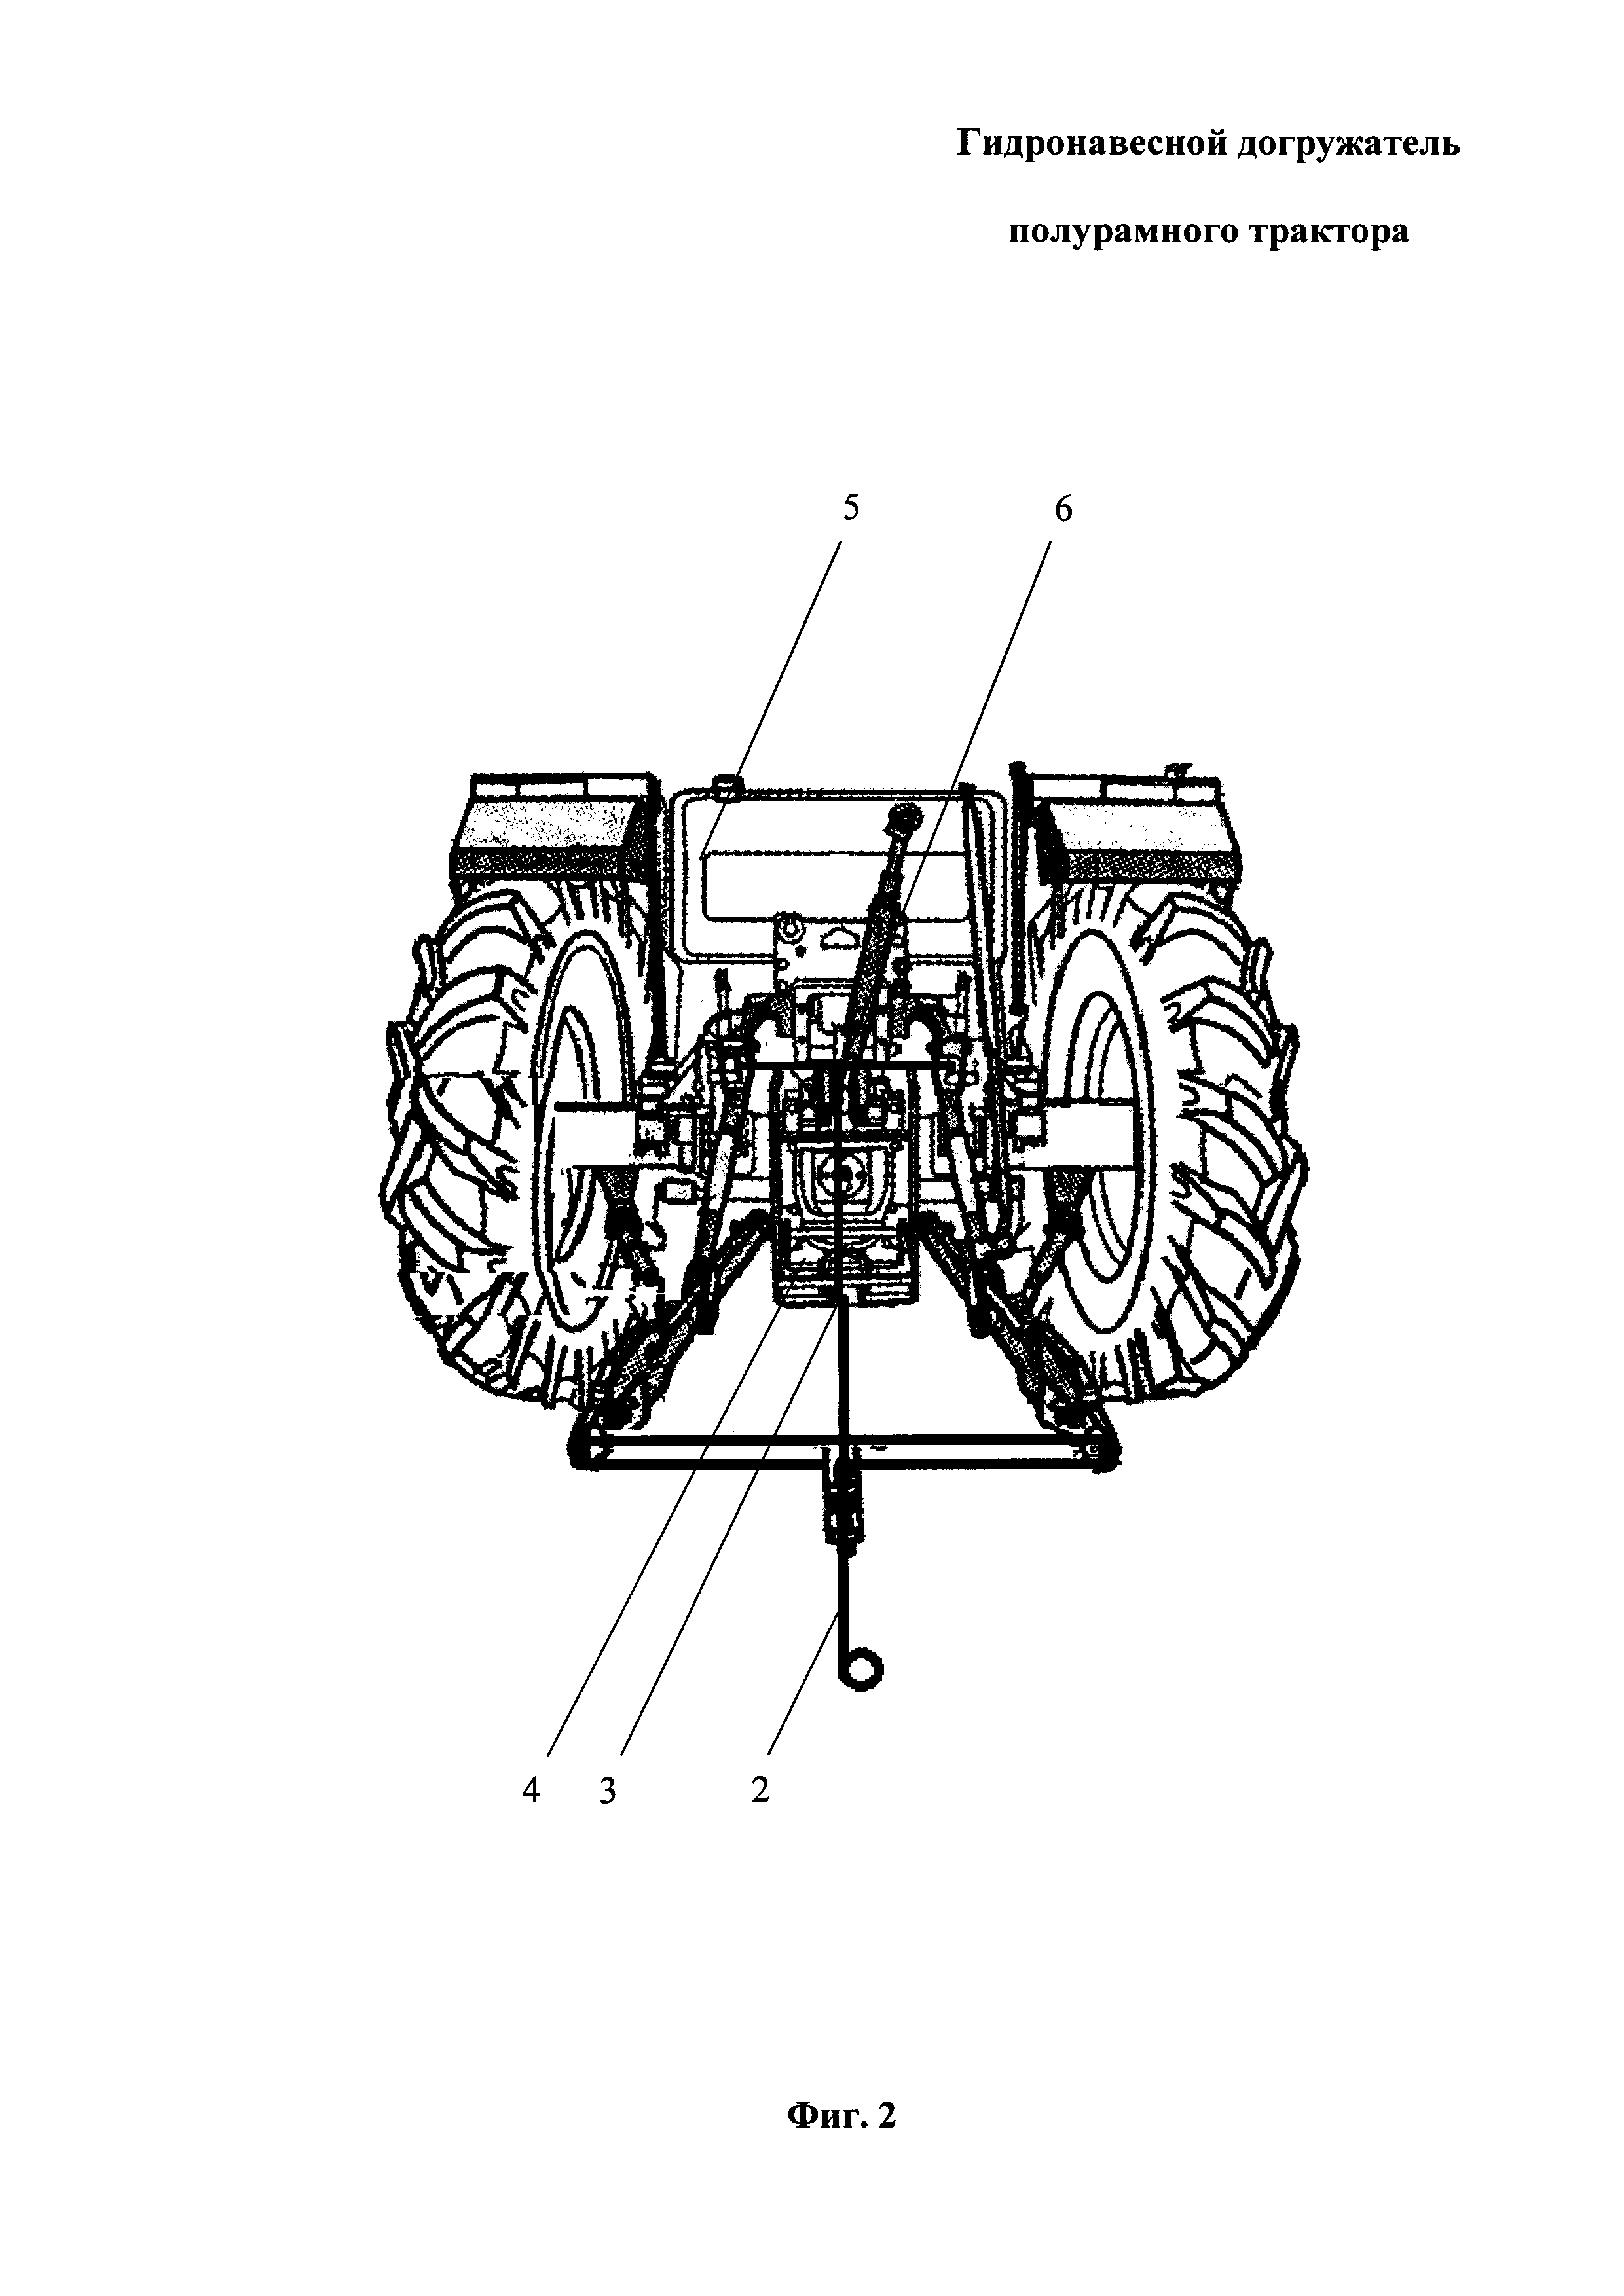 Гидронавесной догружатель полурамного трактора